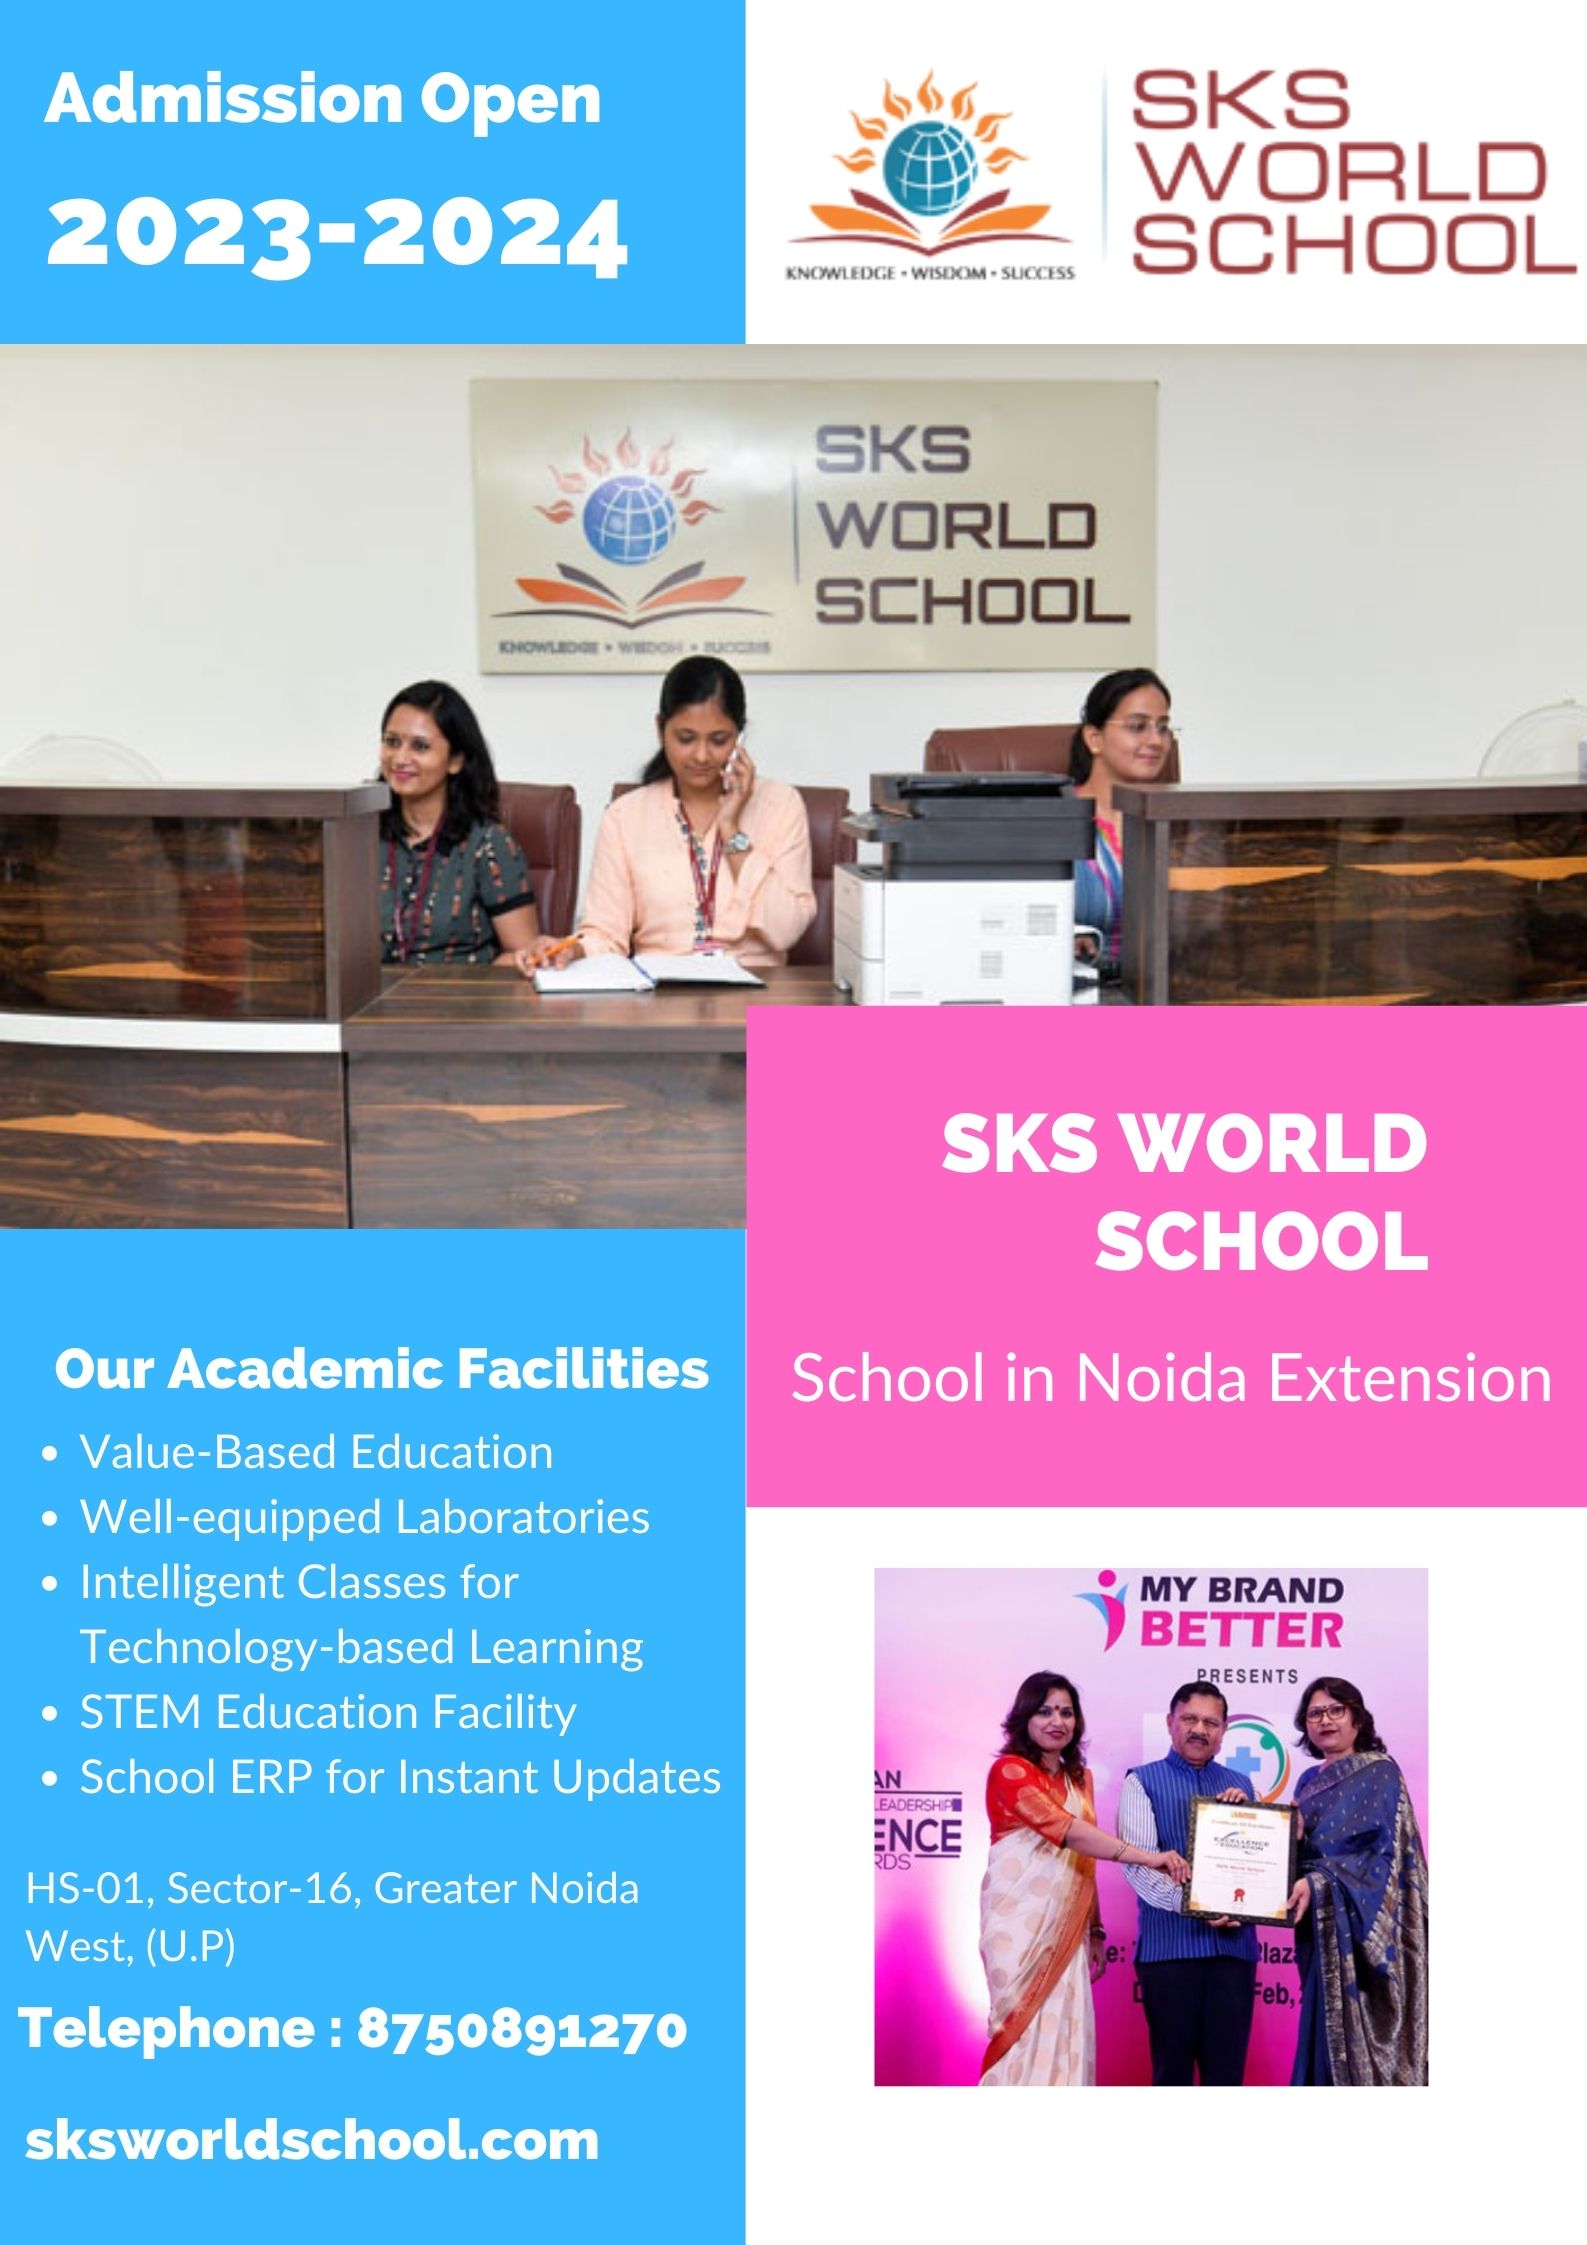 School in Noida Extension